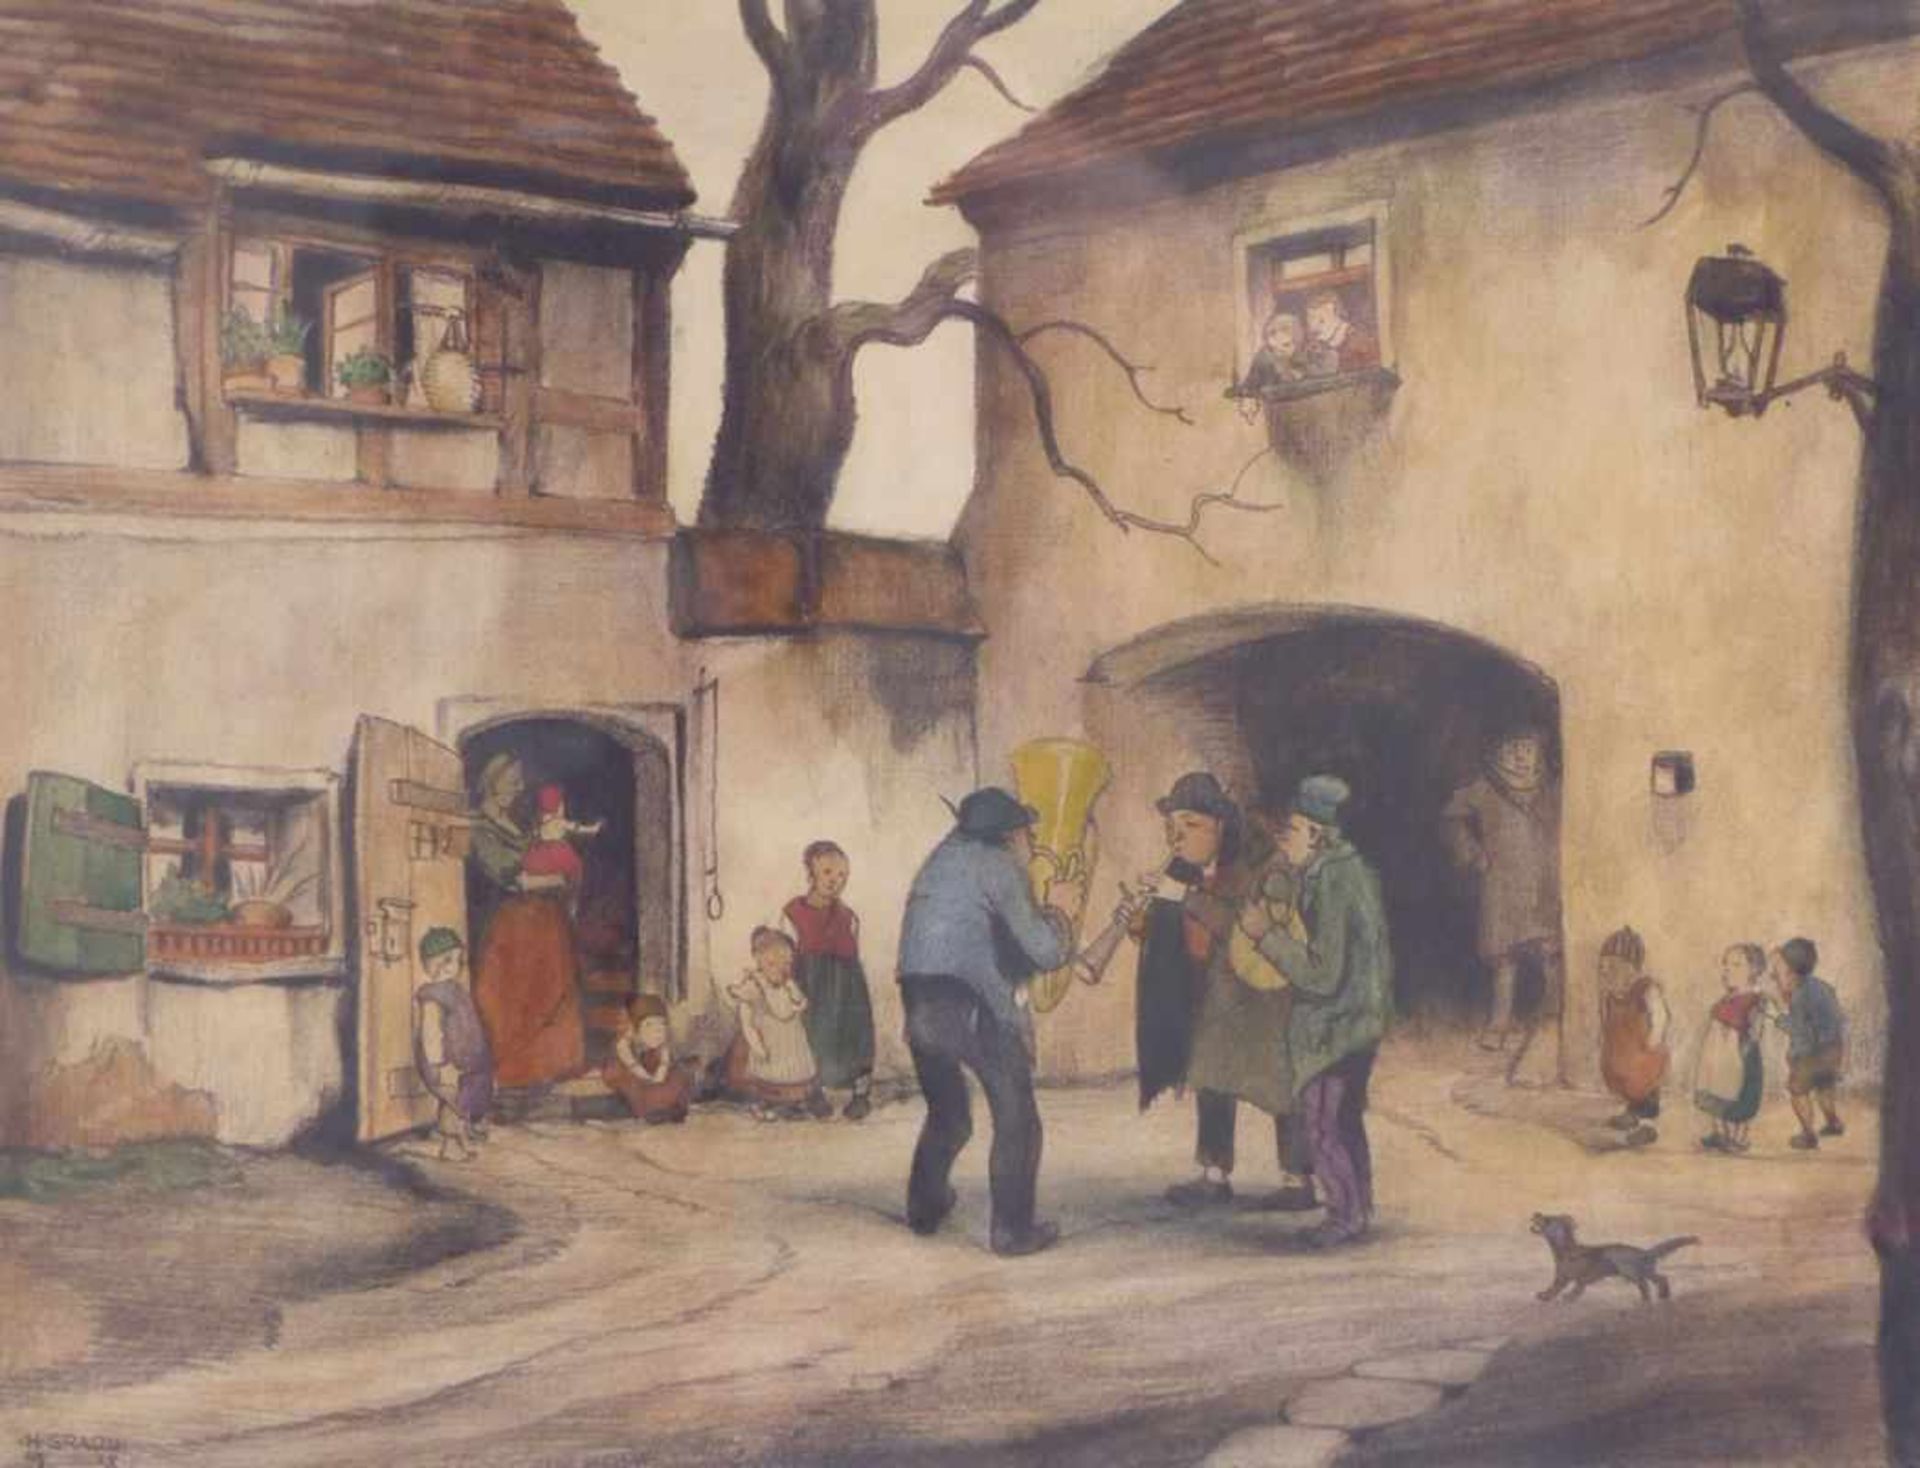 Gradl, HermannSerenade in the courtyard(Marktheidenfeld 1883-1964 Nuremberg) Colour lithograph.